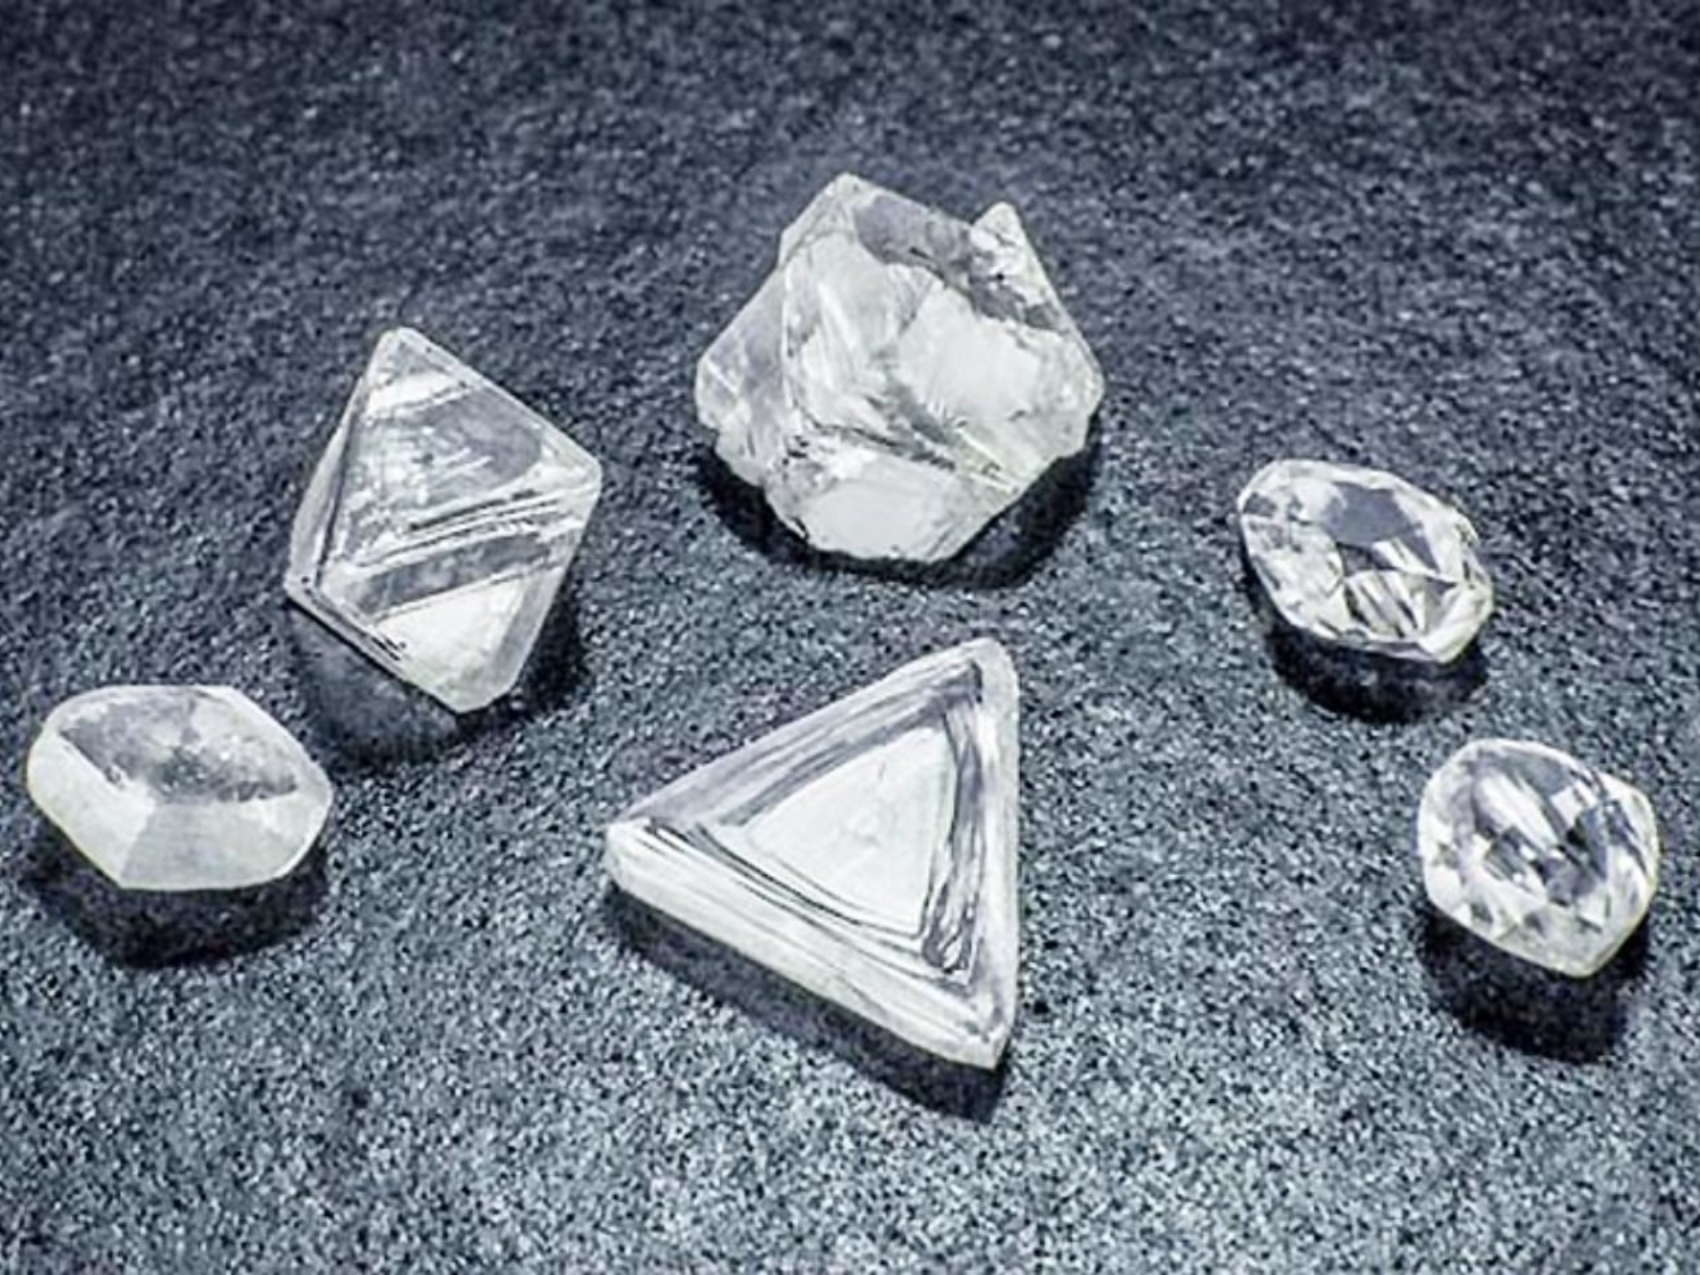 Kim cương là gì